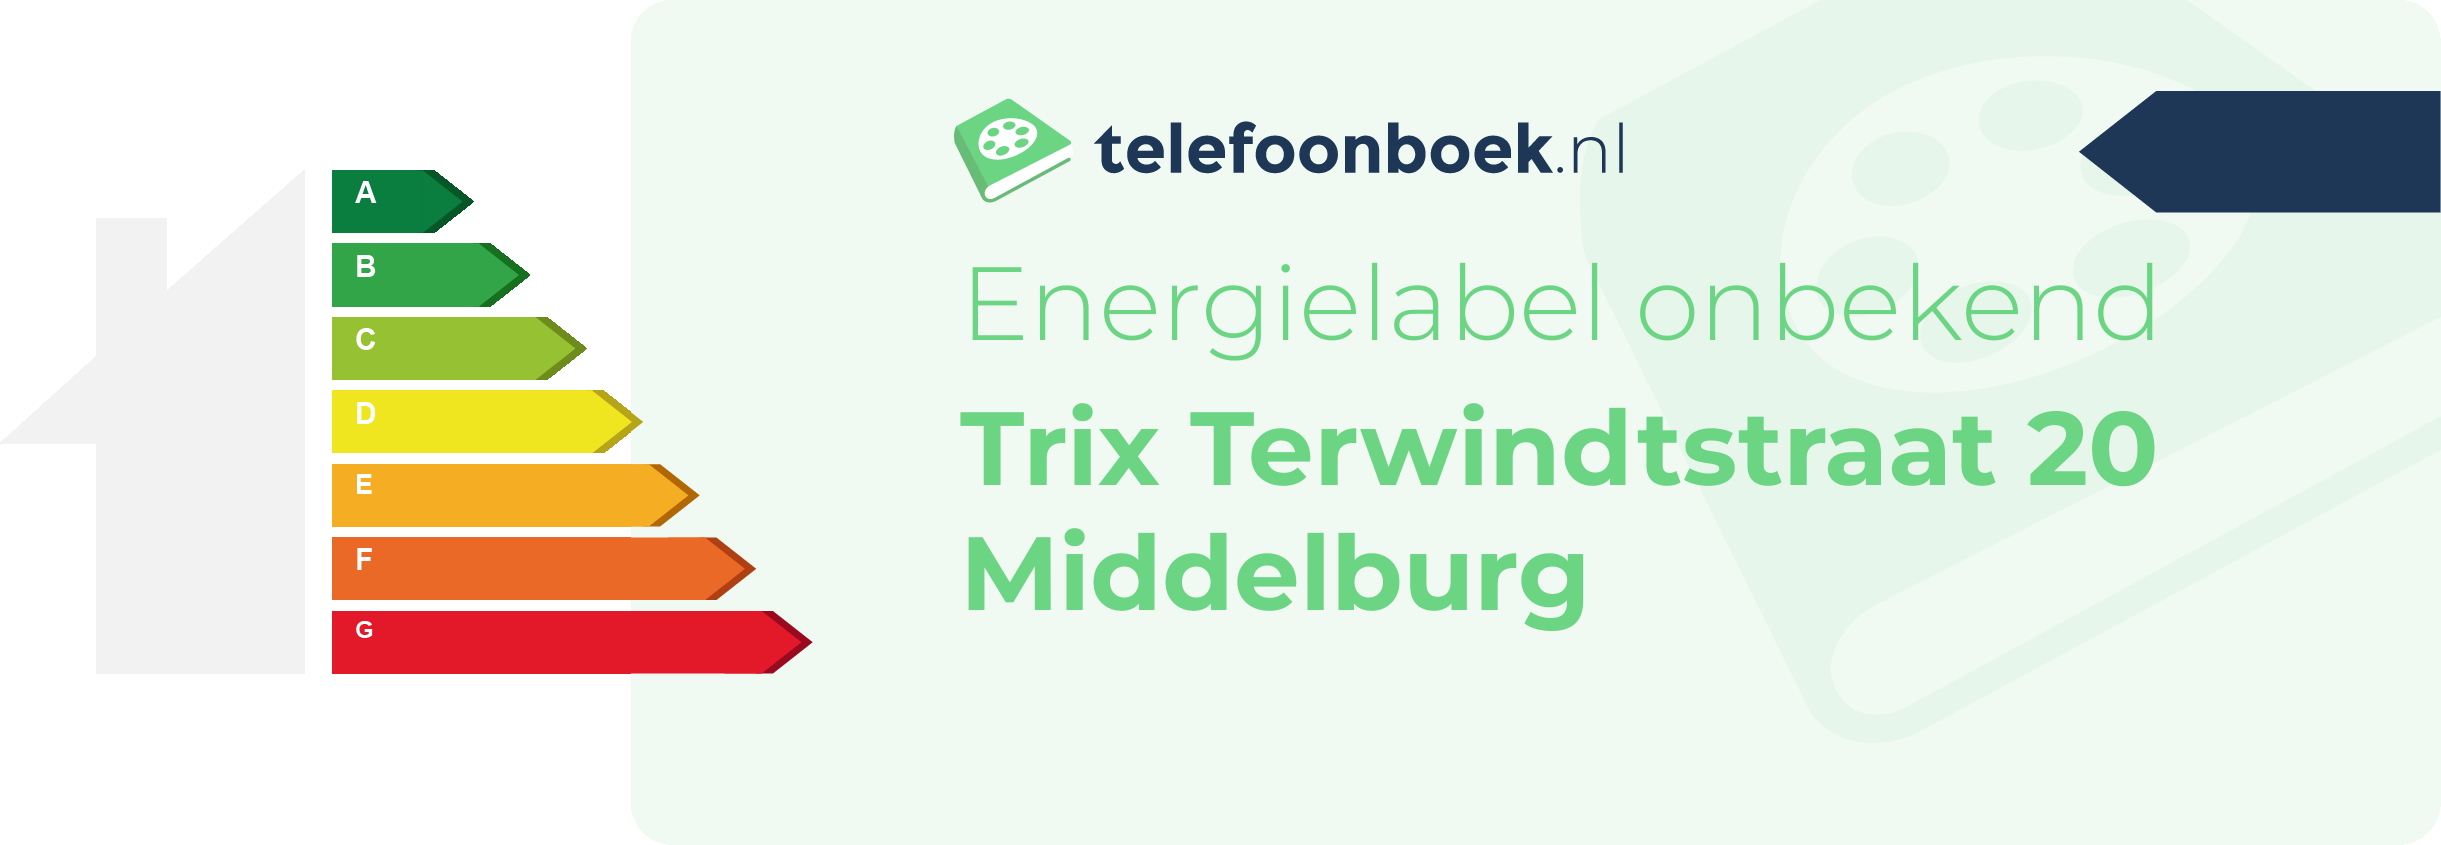 Energielabel Trix Terwindtstraat 20 Middelburg